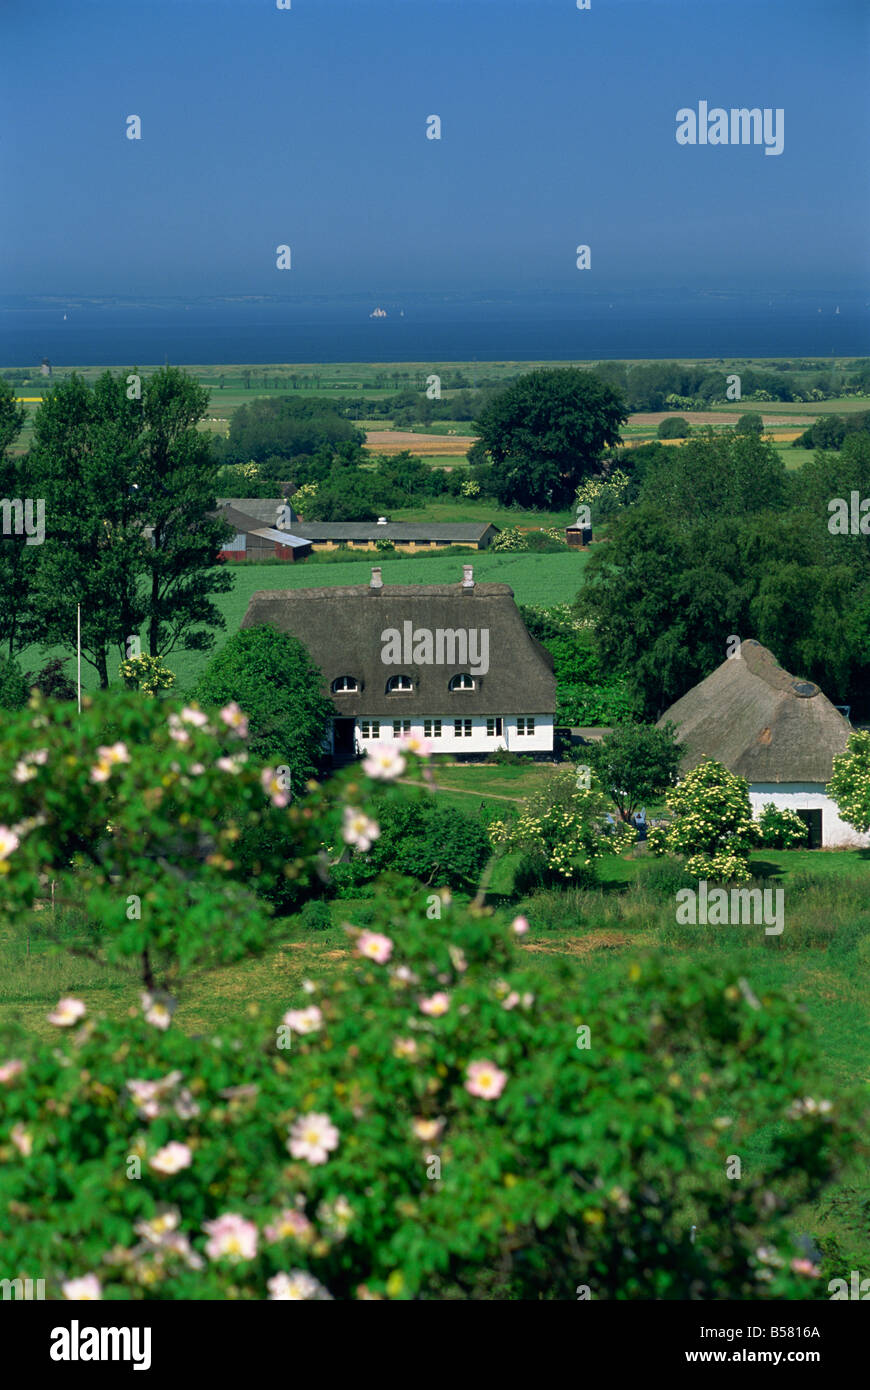 Cabañas con techo de paja y tierras agrícolas, la isla de Aero, Dinamarca, Escandinavia, Europa Foto de stock